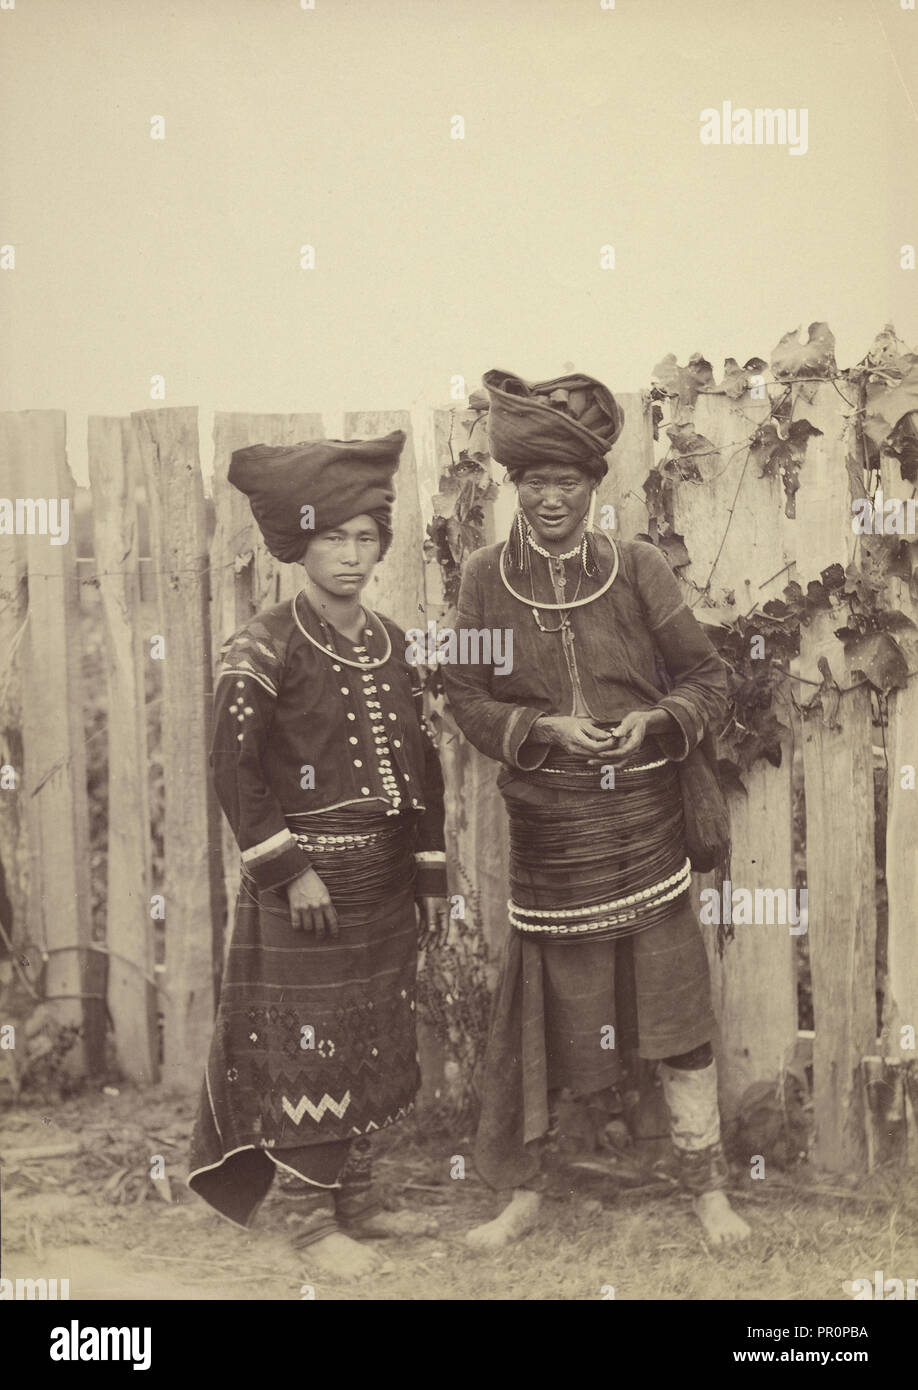 Las mujeres Kachin; Felice Beato, 1832 - 1909, Birmania, 1887 - 1893; Albúmina imprimir plata Foto de stock